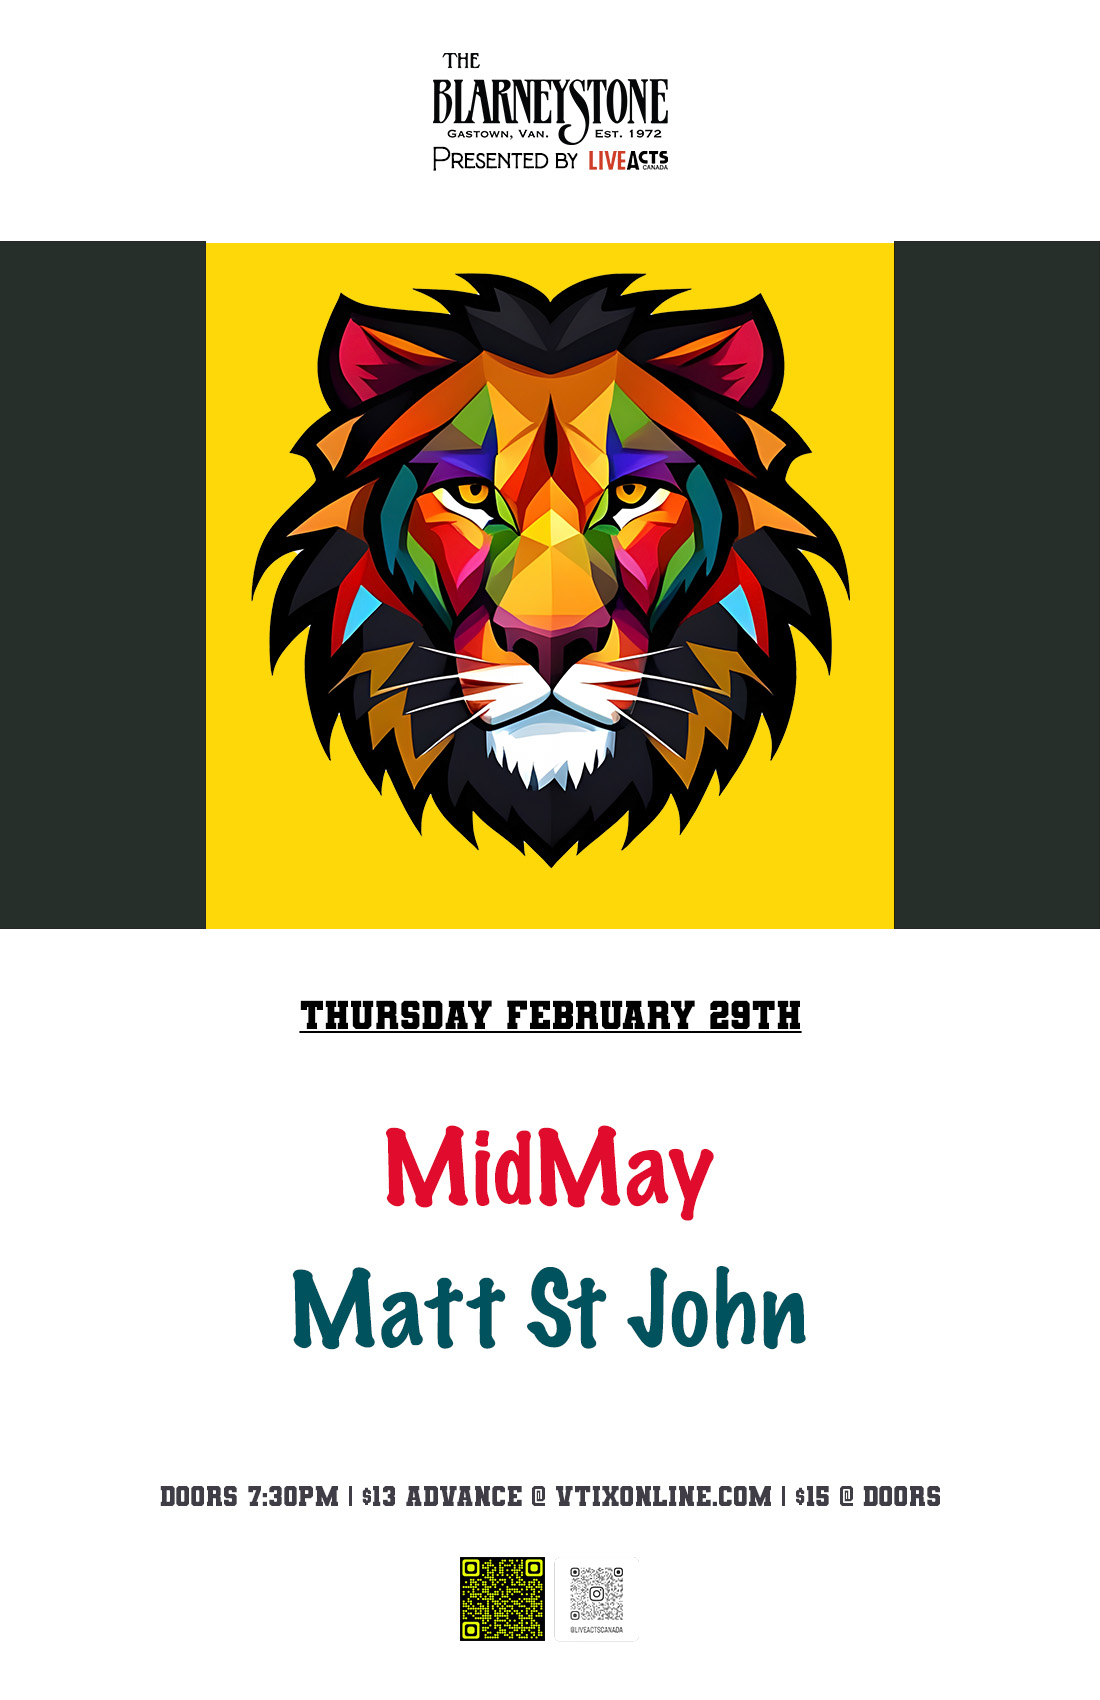 MidMay w/ Matt St John